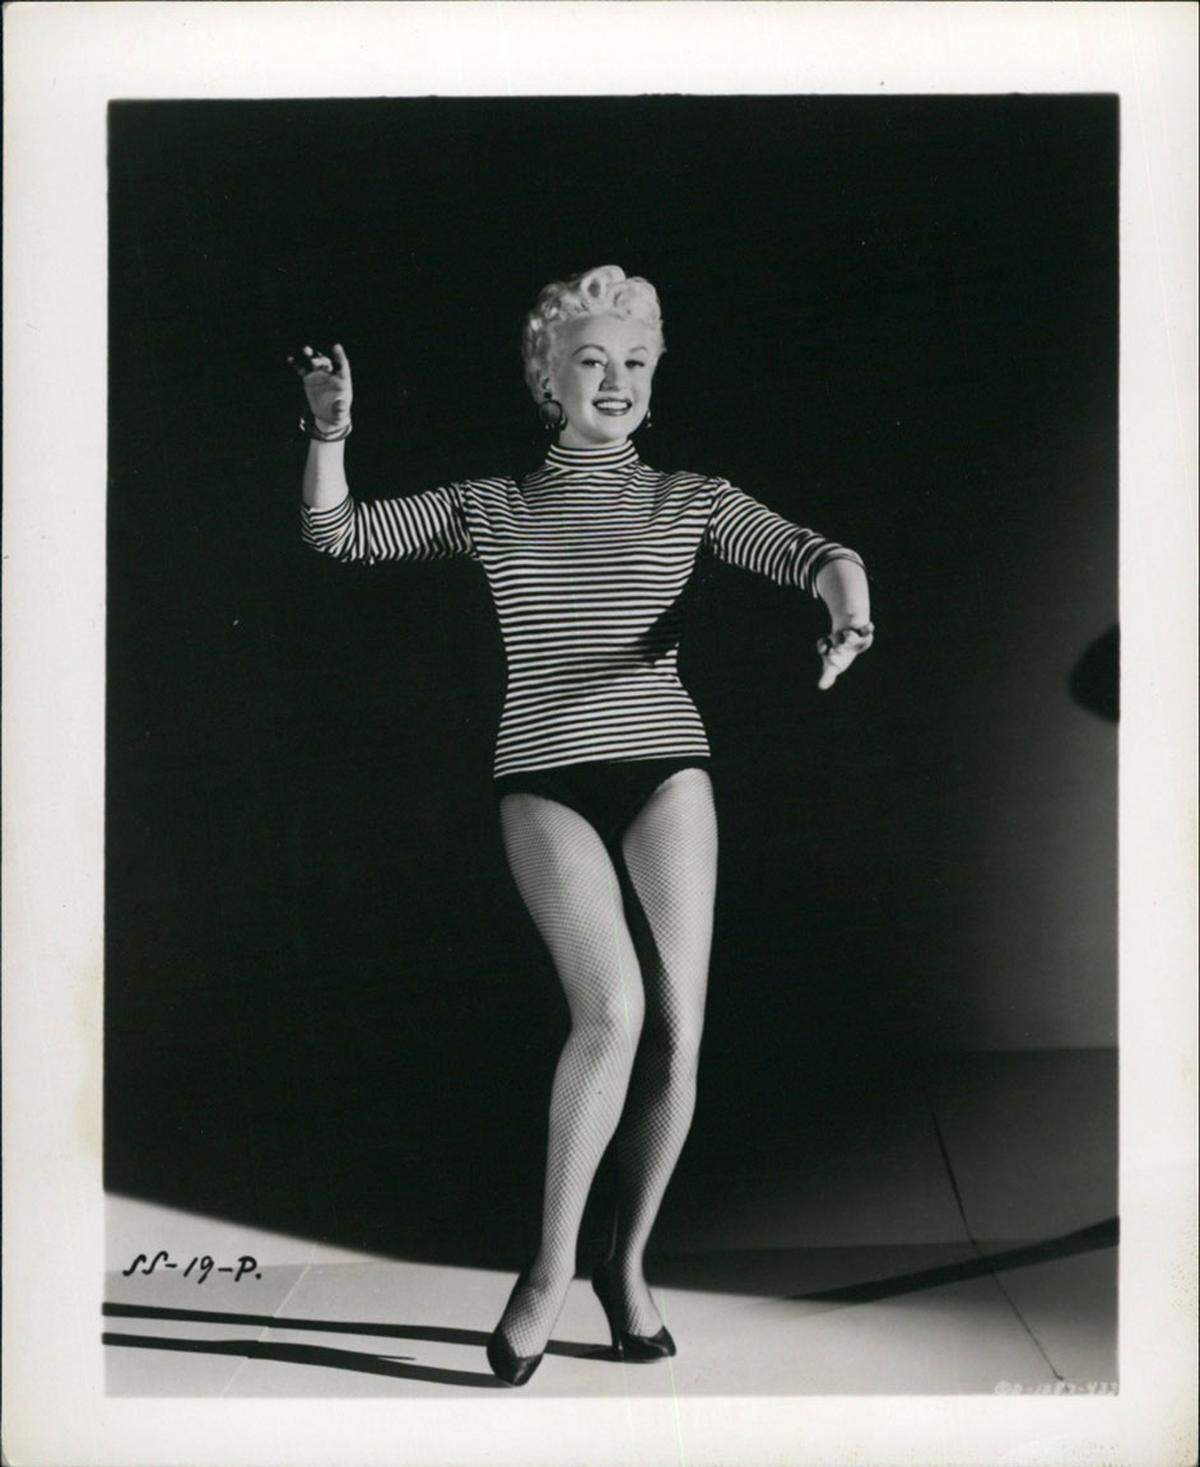 In den Vierzigern hieß das Lieblings-Pin-Up-Girl der amerikanischen Soldaten Betty Grable. Die Tänzerin war für ihre "One-Million-Dollar"- Beine bekannt.